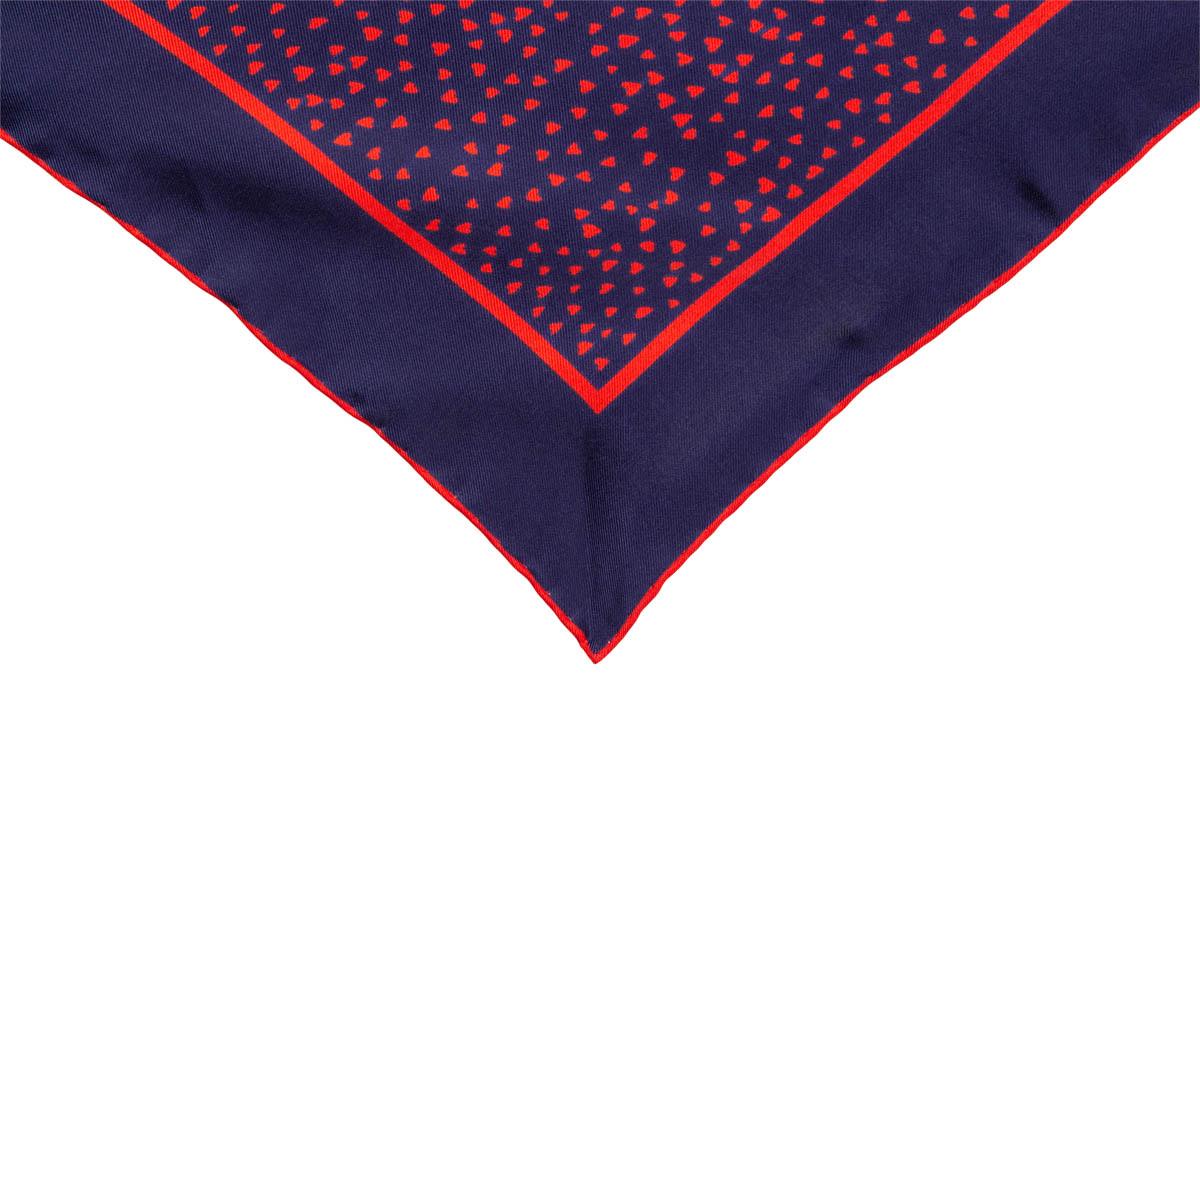 100% authentique écharpe triangle imprimé cœur Christian Dior en soie bleu marine et rouge (100%). A été porté et est en excellent état. 

Mesures
Largeur	60cm (23.4in)
Longueur	130cm (50.7in)

Toutes nos annonces comprennent uniquement l'article